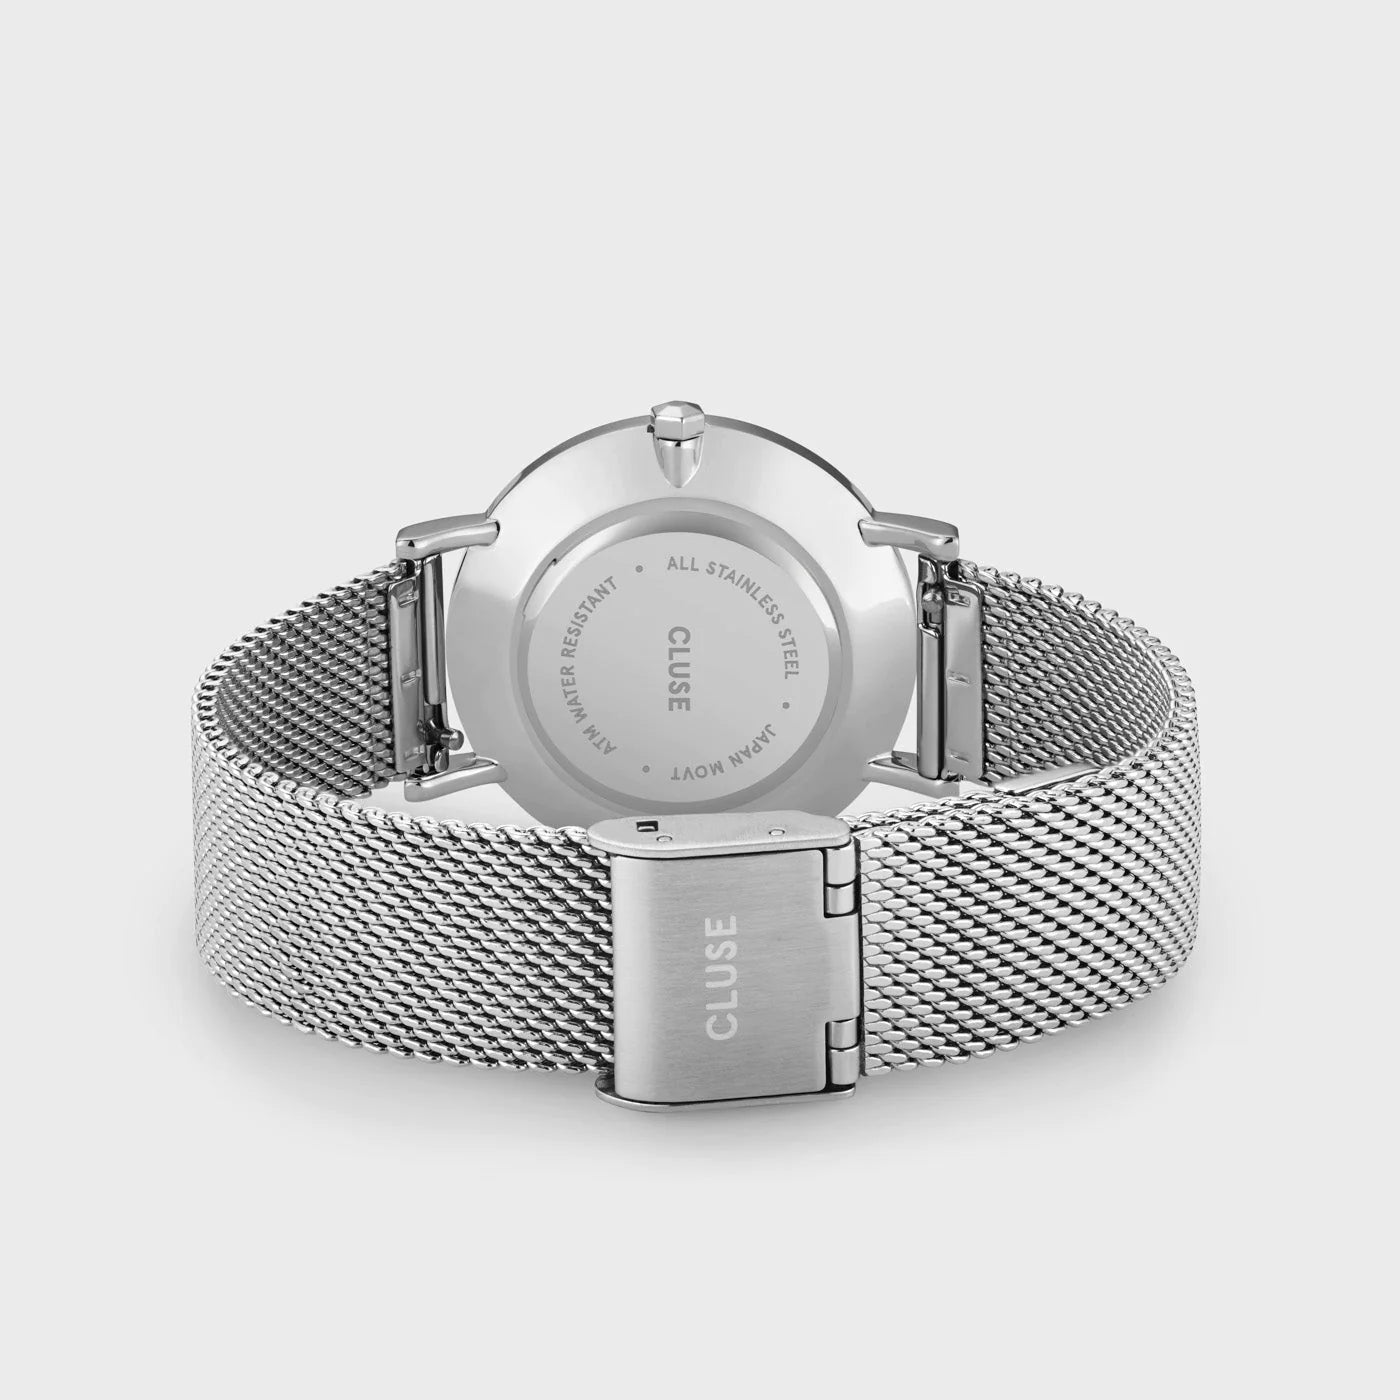 Gehäuseboden und Edelstahl-Armband der Cluse Stahl-Uhr "Minuit Mesh" mit silberfarbenem Gehäuse und weißem Zifferblatt